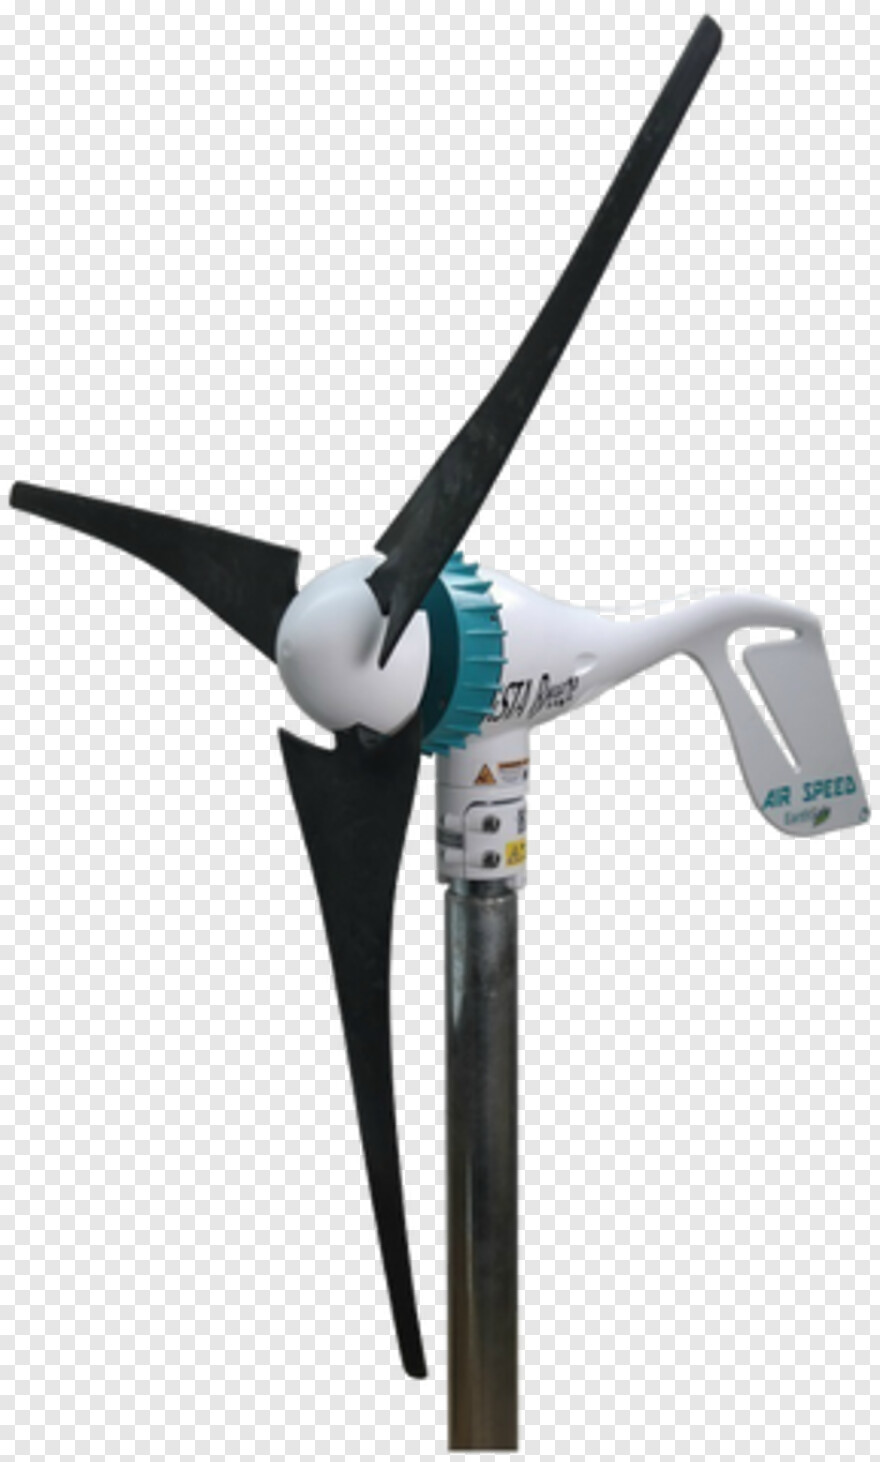 wind-turbine # 857144